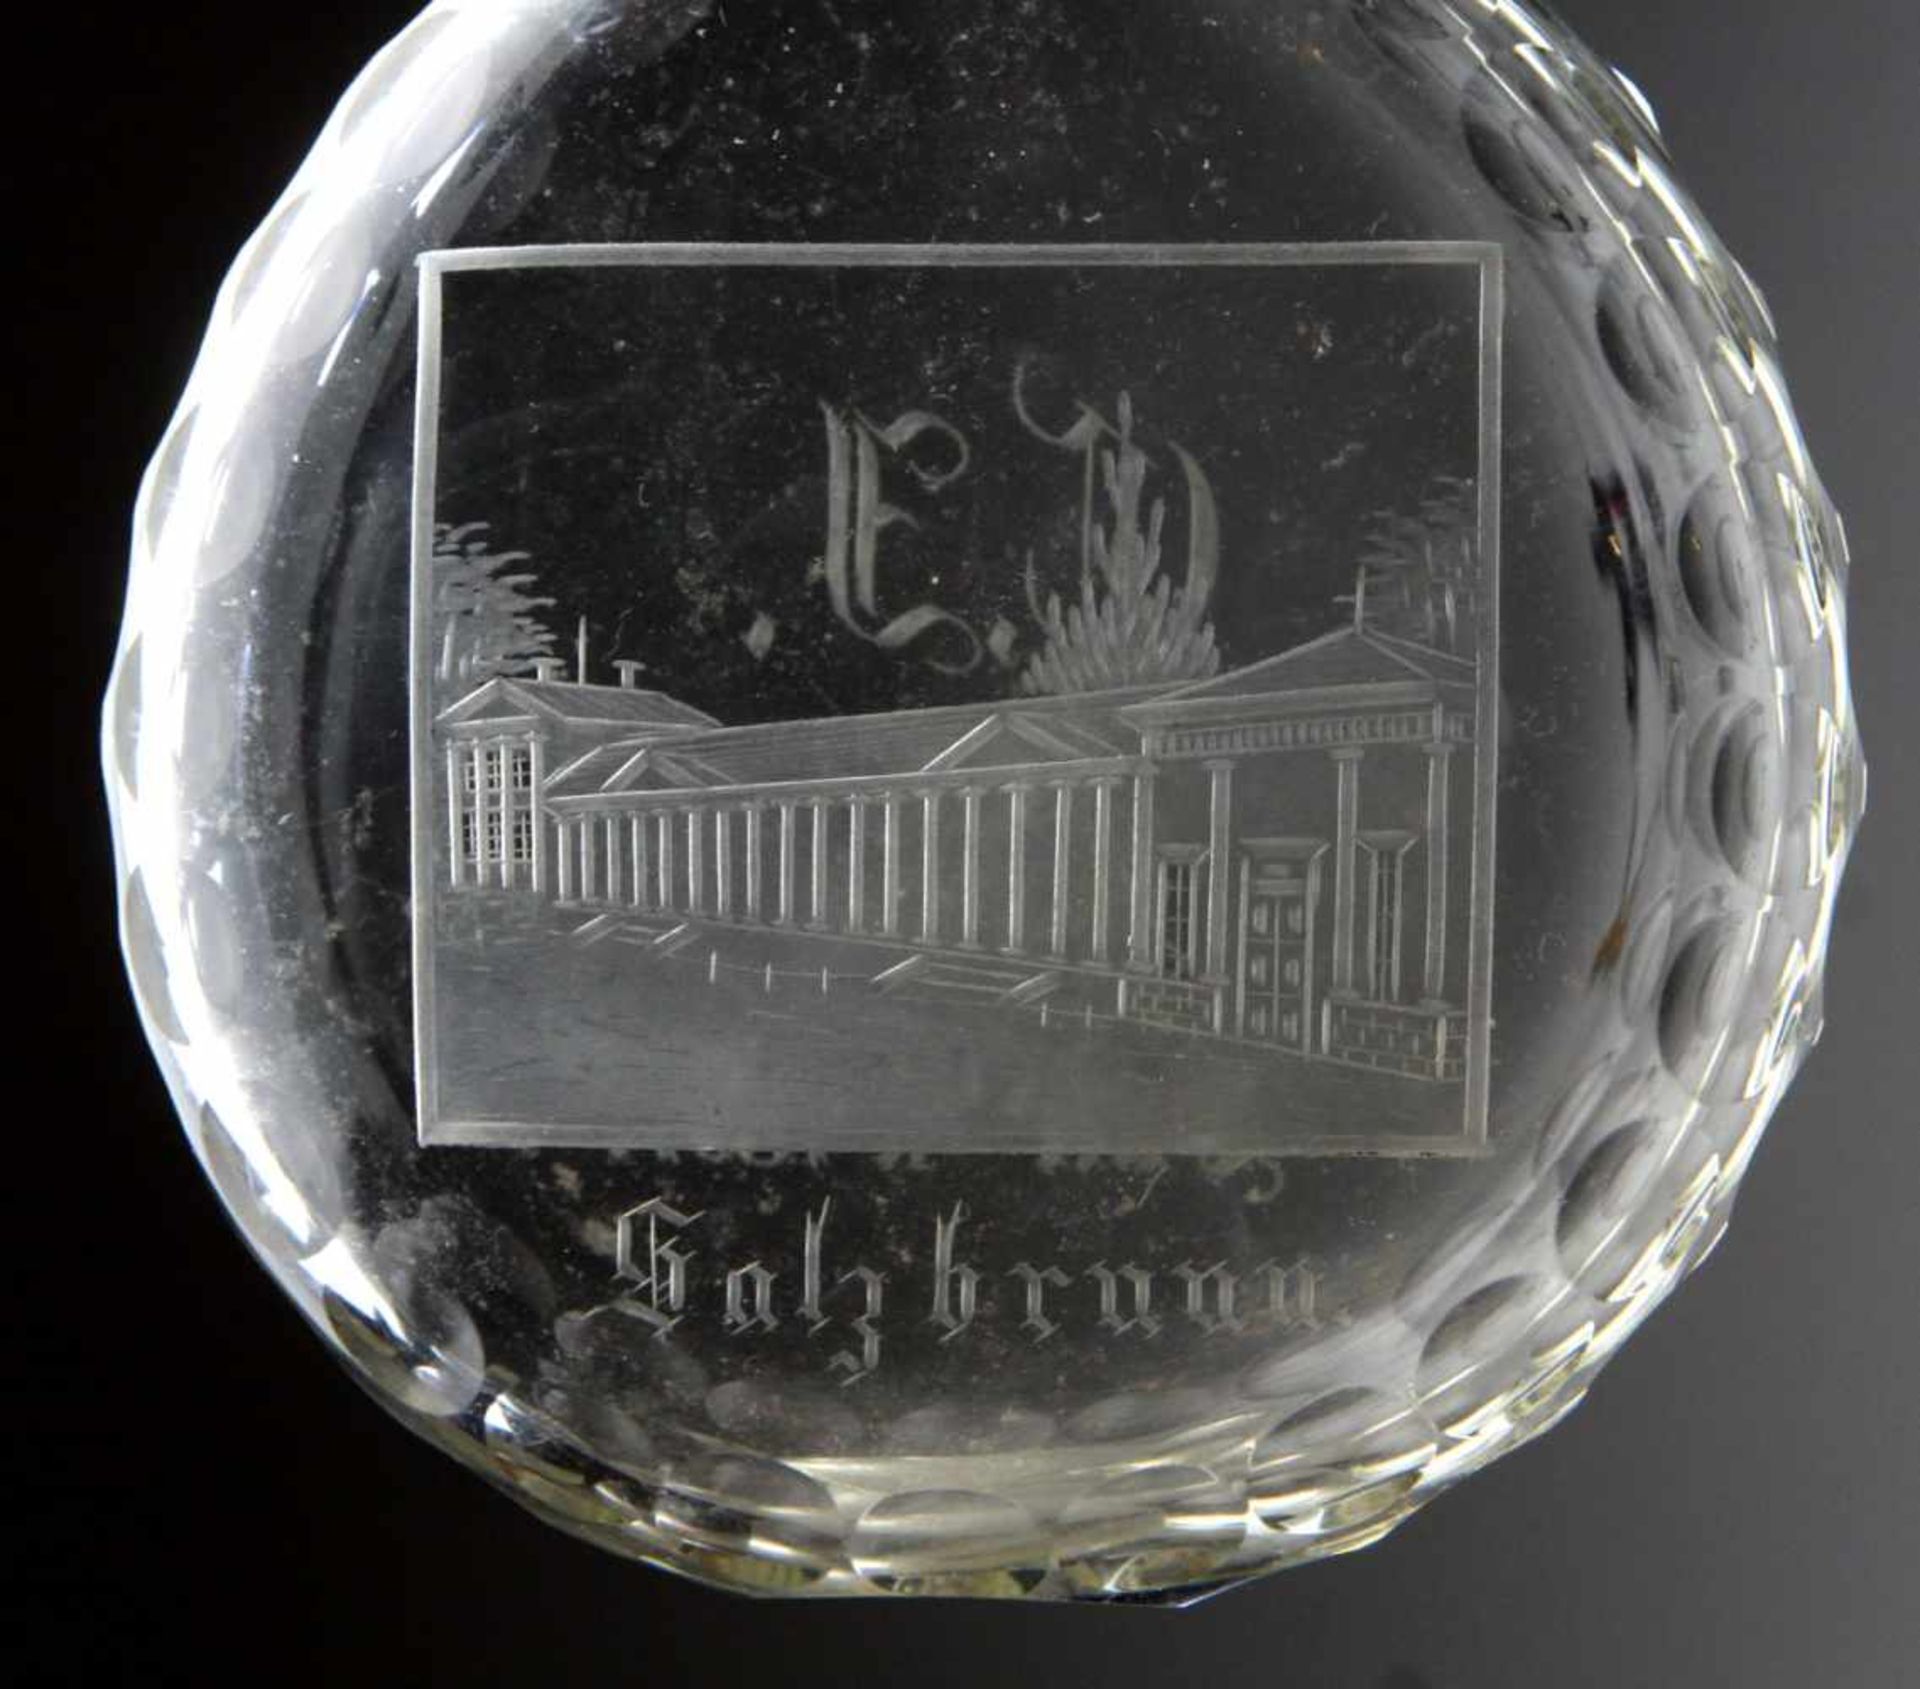 Plattflasche Salzbrunn 1891farbloses Glas mundgeblasen, tropfenförmige Plattflasche mit - Bild 2 aus 2